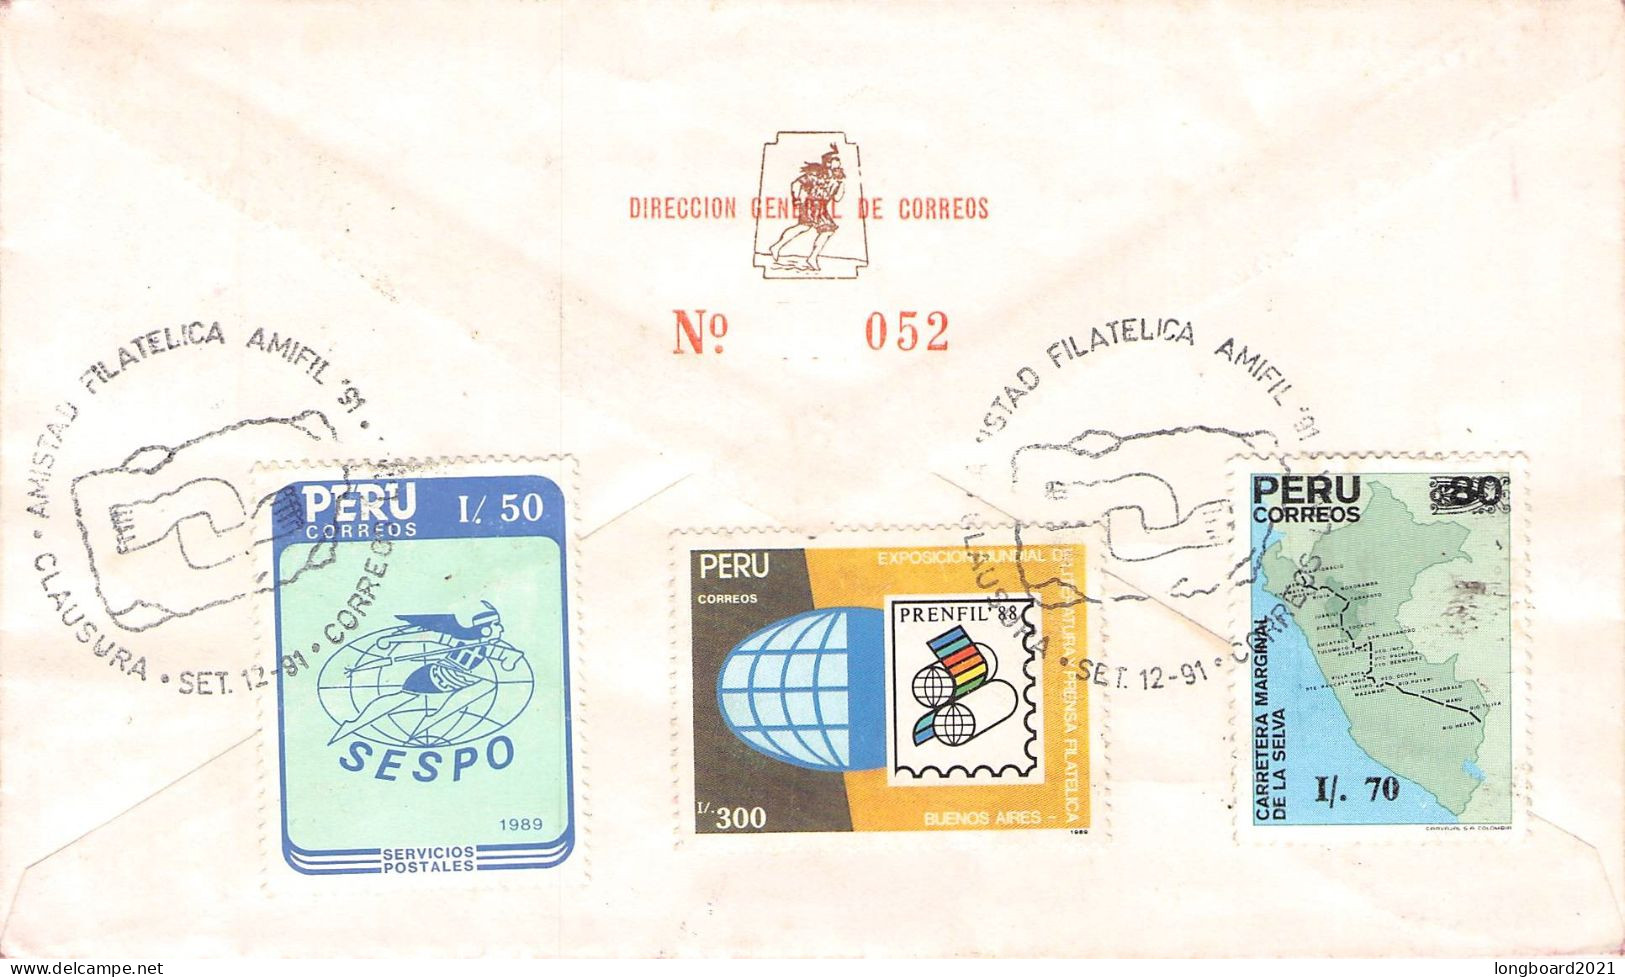 PERÚ - FDC 2-5-1990 ASOCIACION FILATELICA Mi #1425 / 688 - Perú